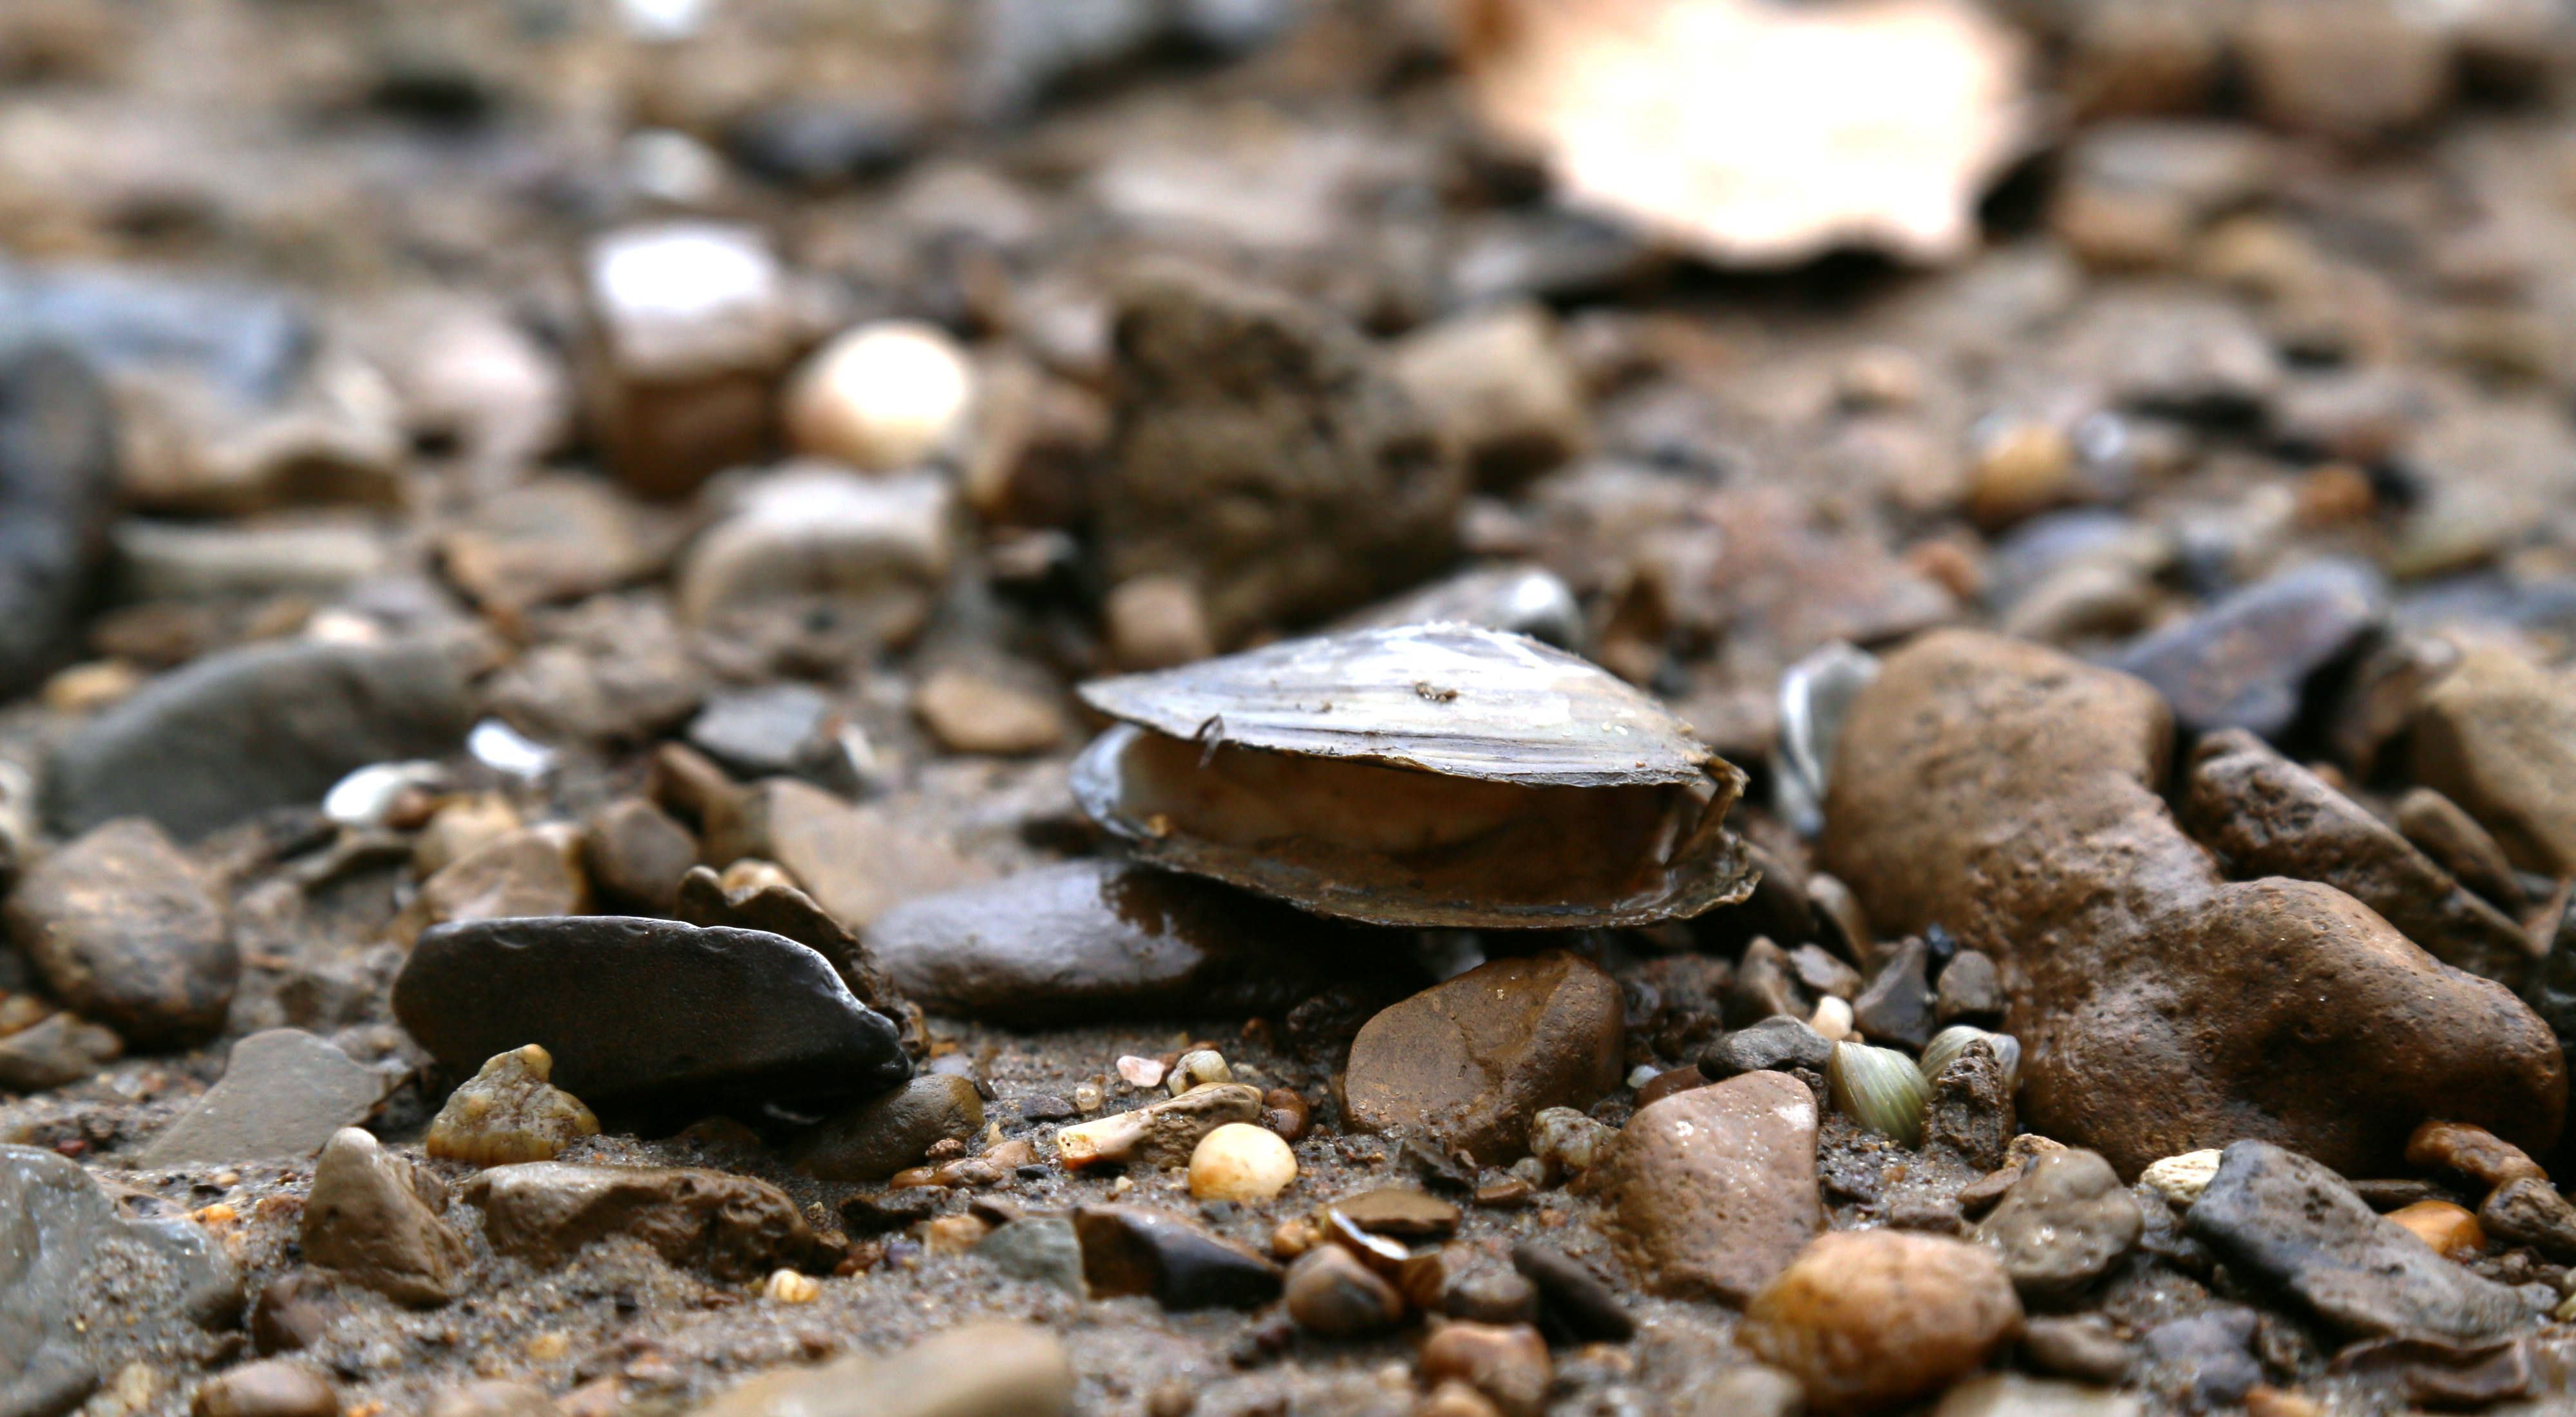 An open mussel shell lies on a pebble-strewn sandy beach.